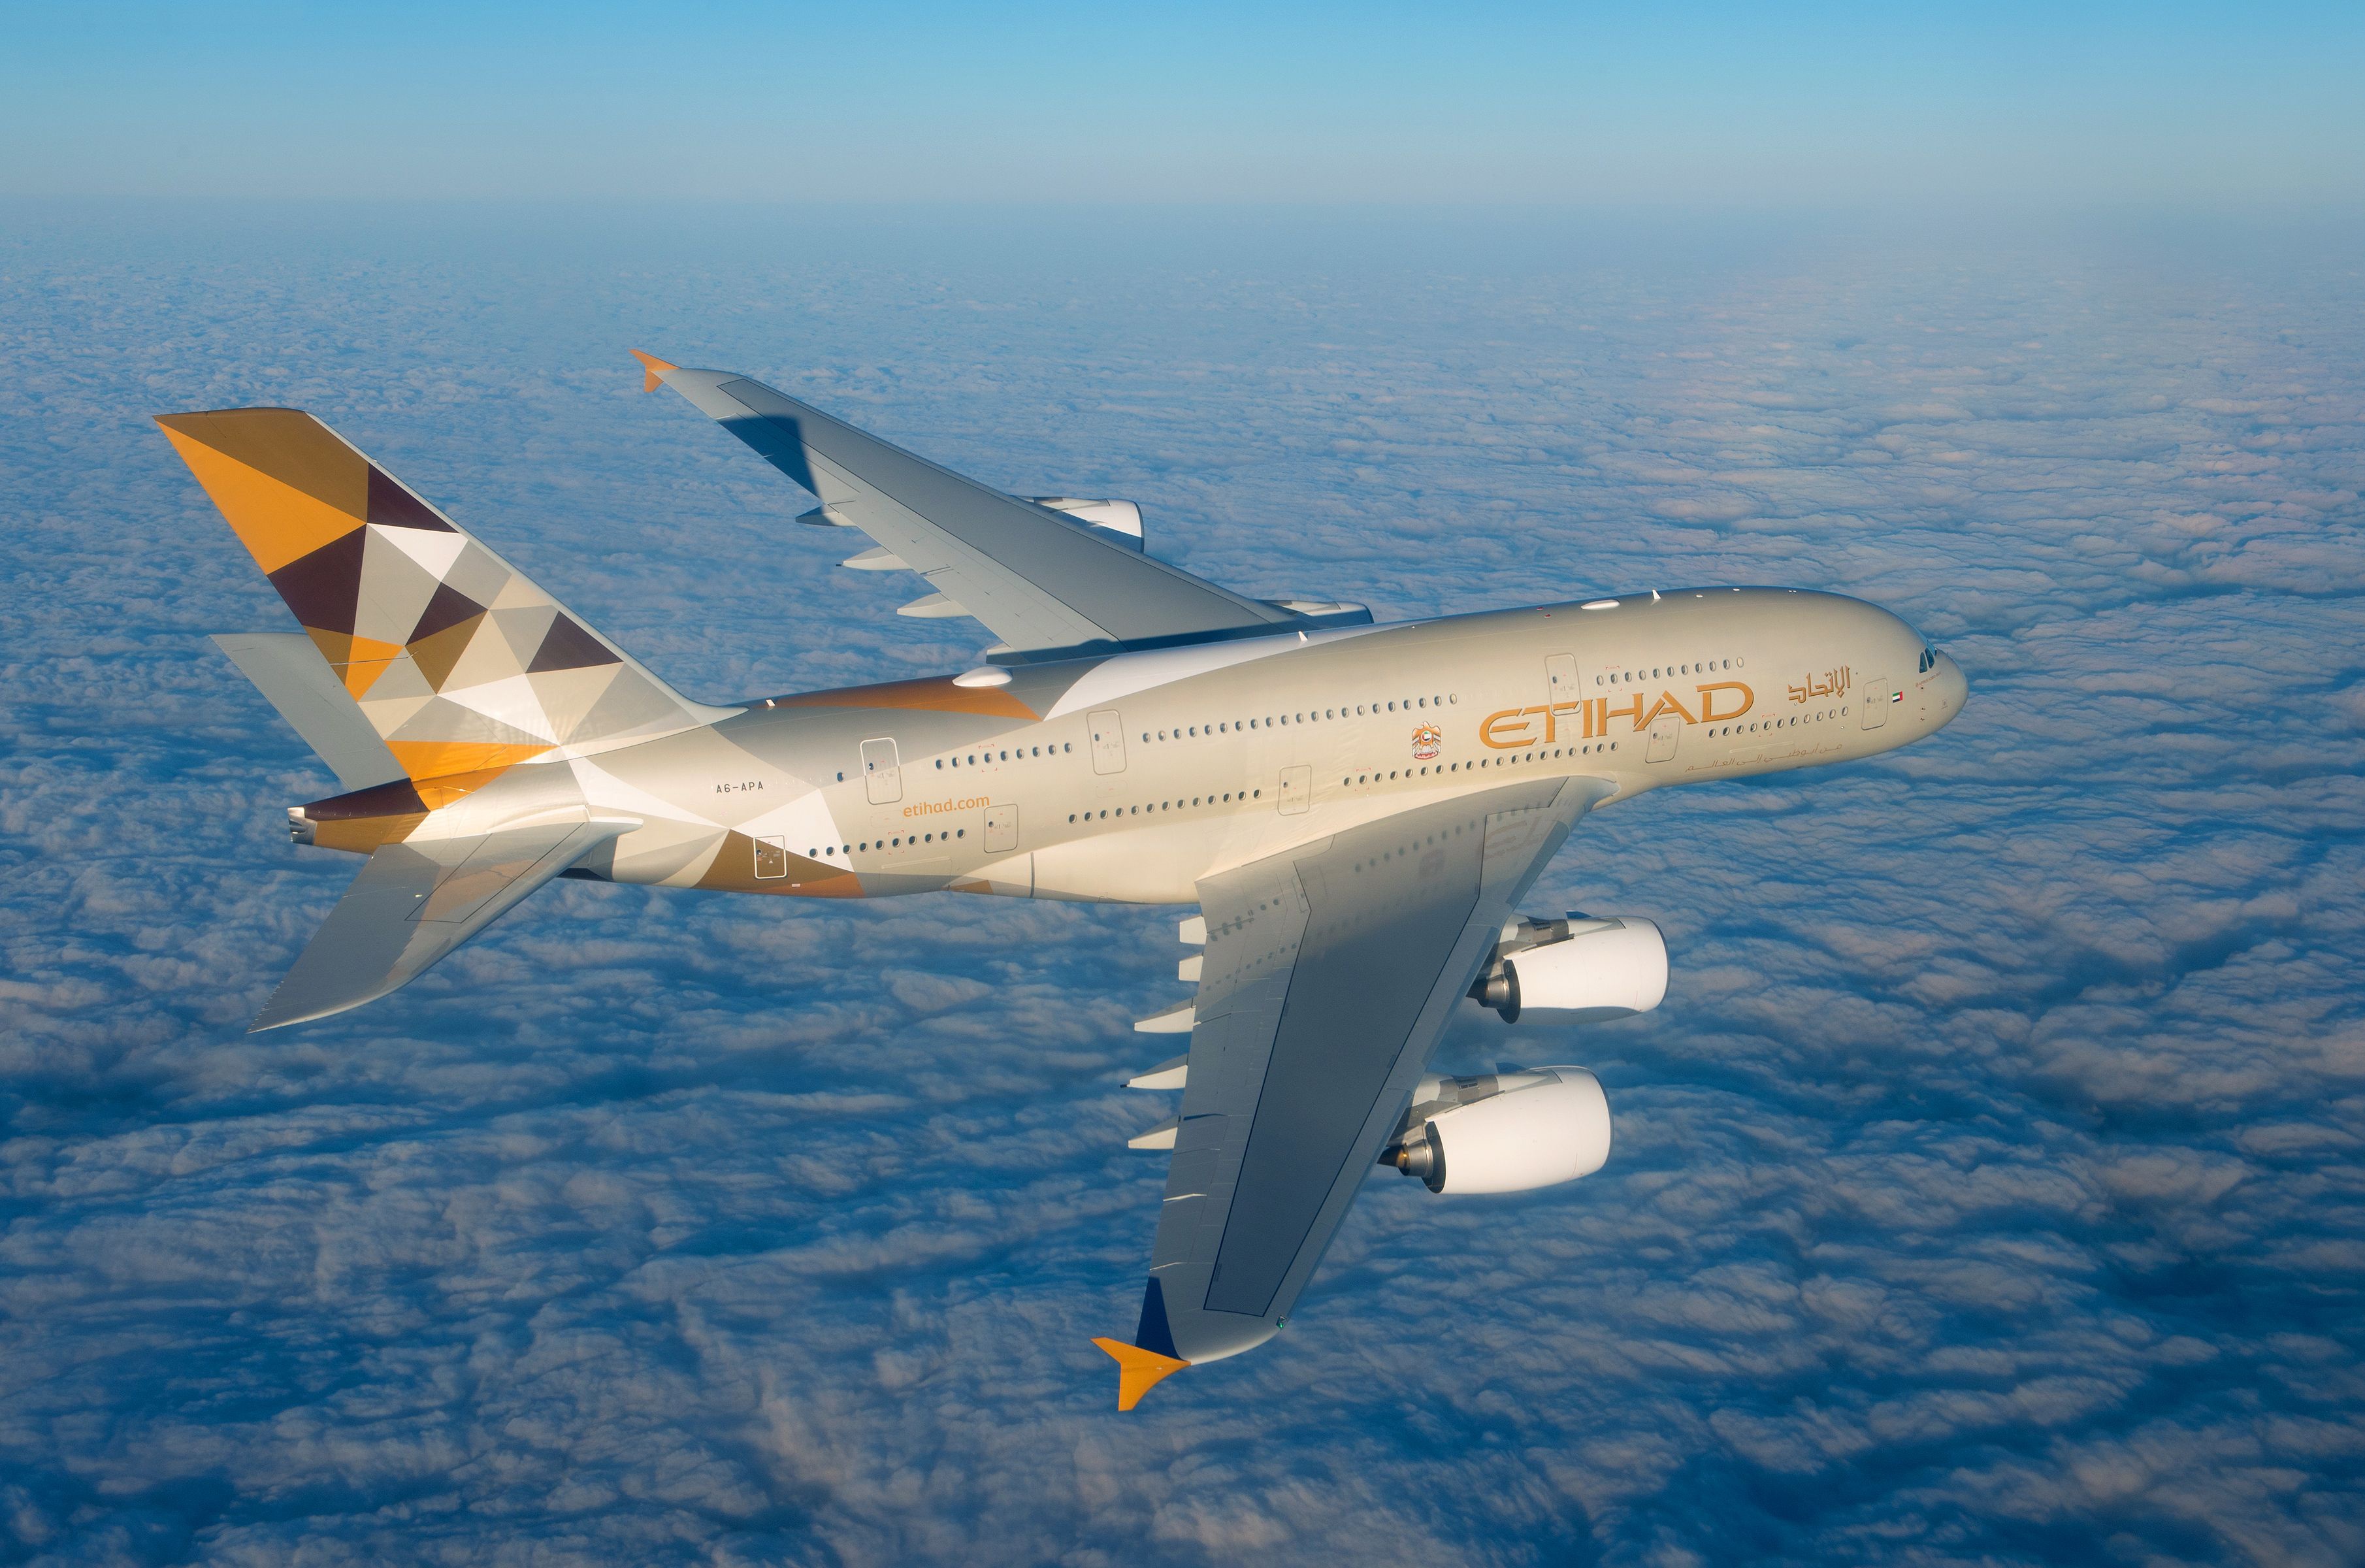 Airbus Airbus A380 Aircraft Cloud Passenger Plane 3620x2400